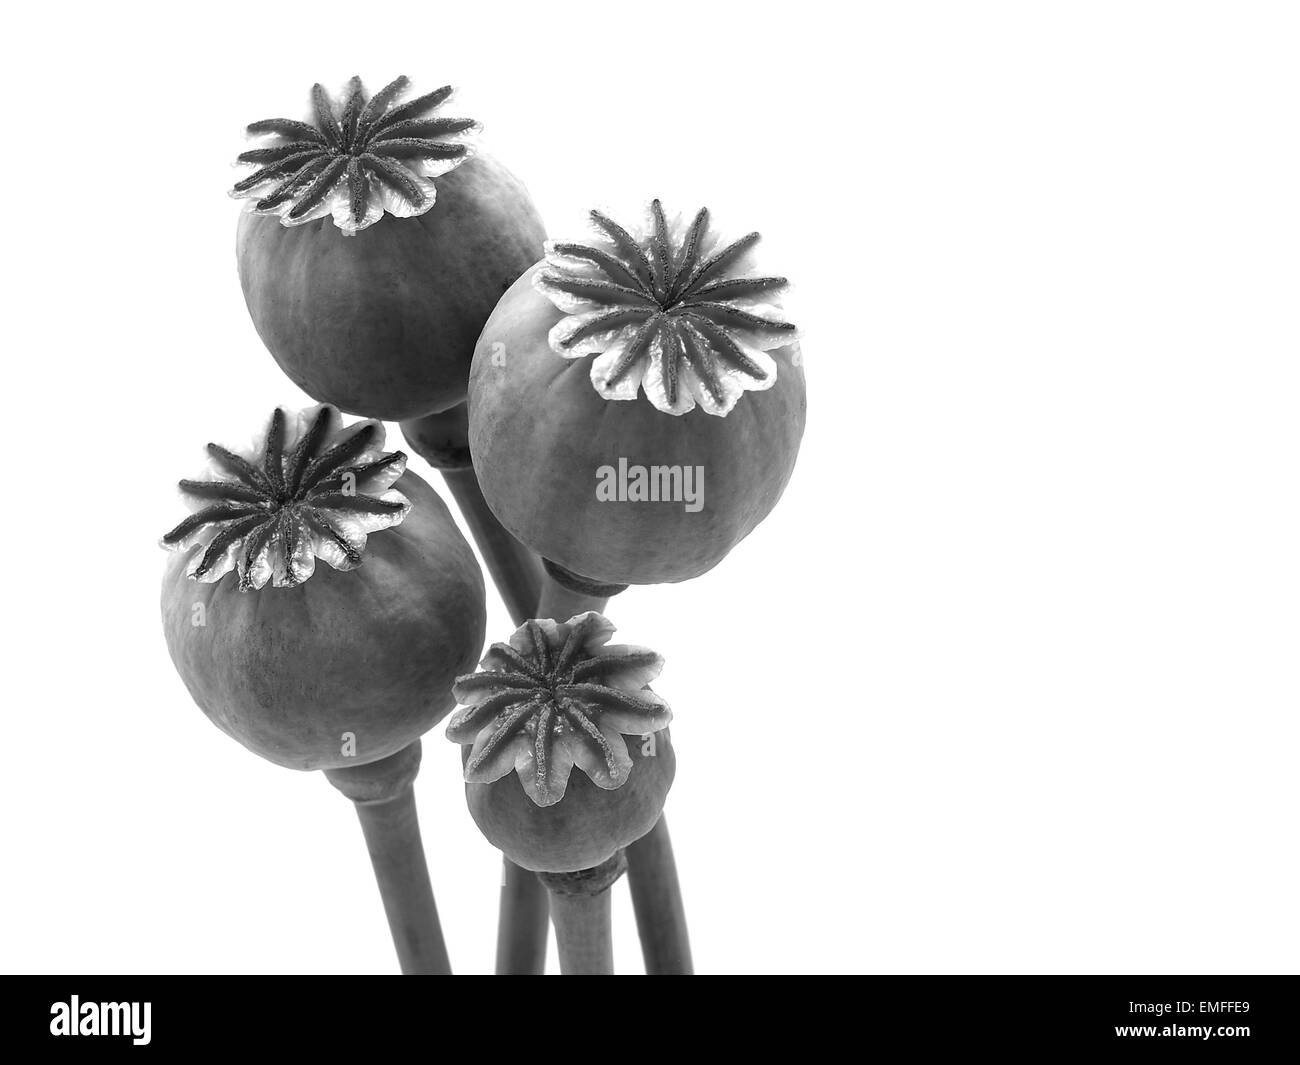 Poppy botanical Black and White Stock Photos & Images - Alamy